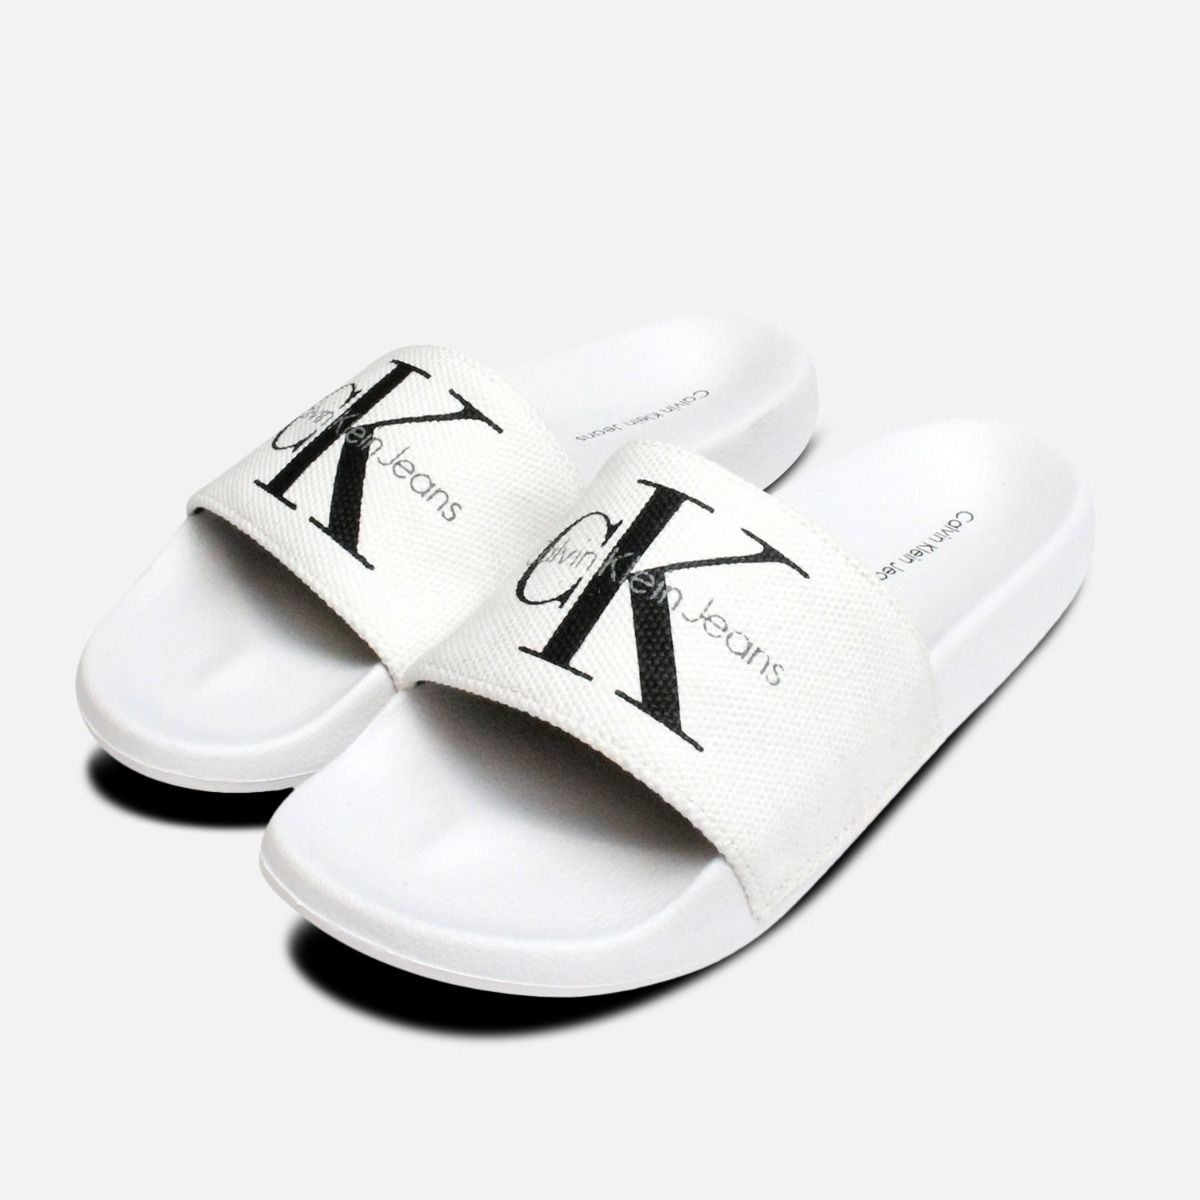 white canvas flip flops